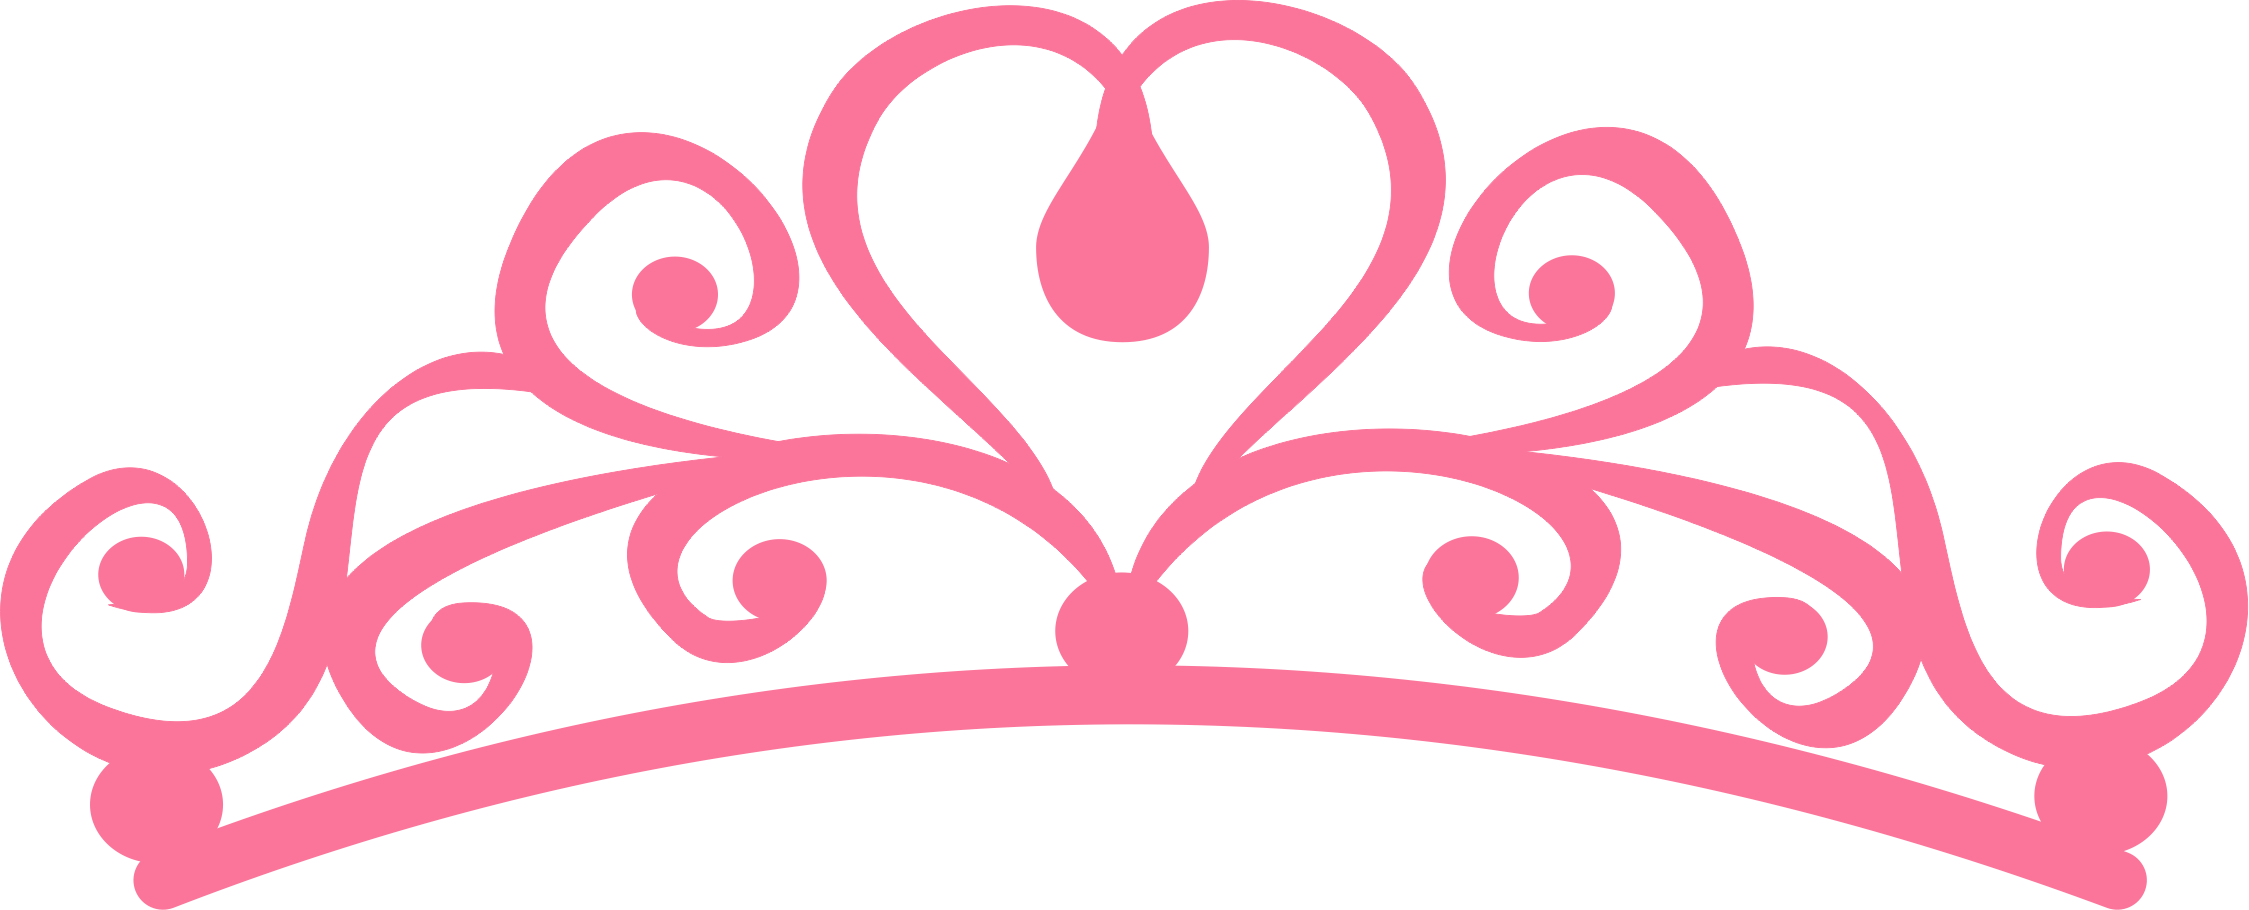 Clipart crown rapunzel. Hd princess pin images